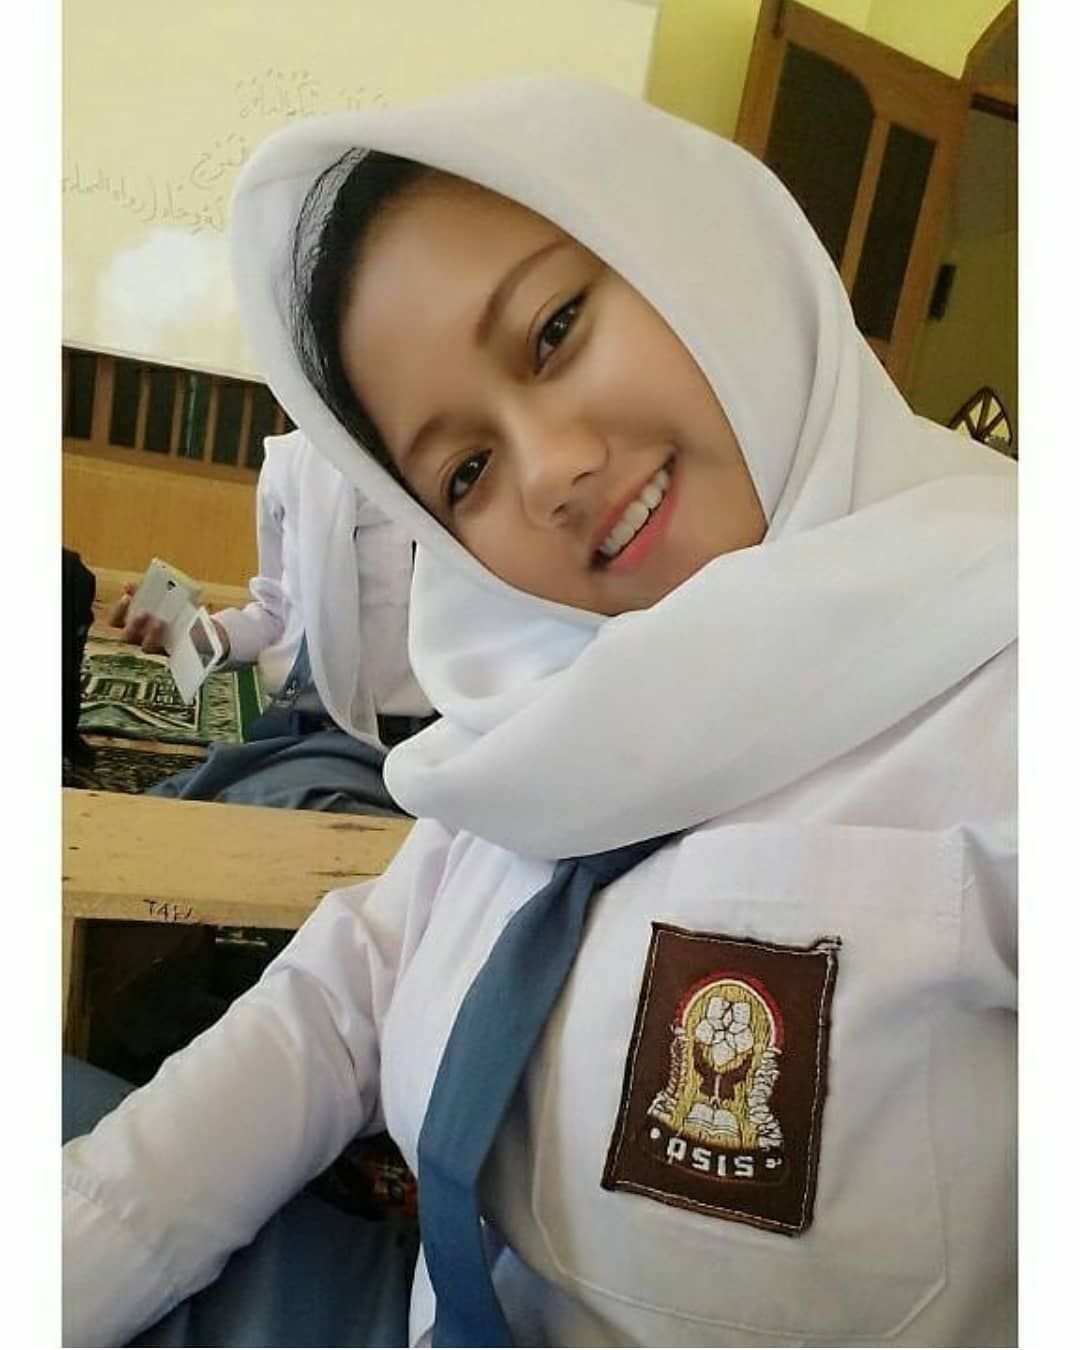 99+ Foto Siswi SMA Cantik Berjilbab Indonesia Idaman terbaru.